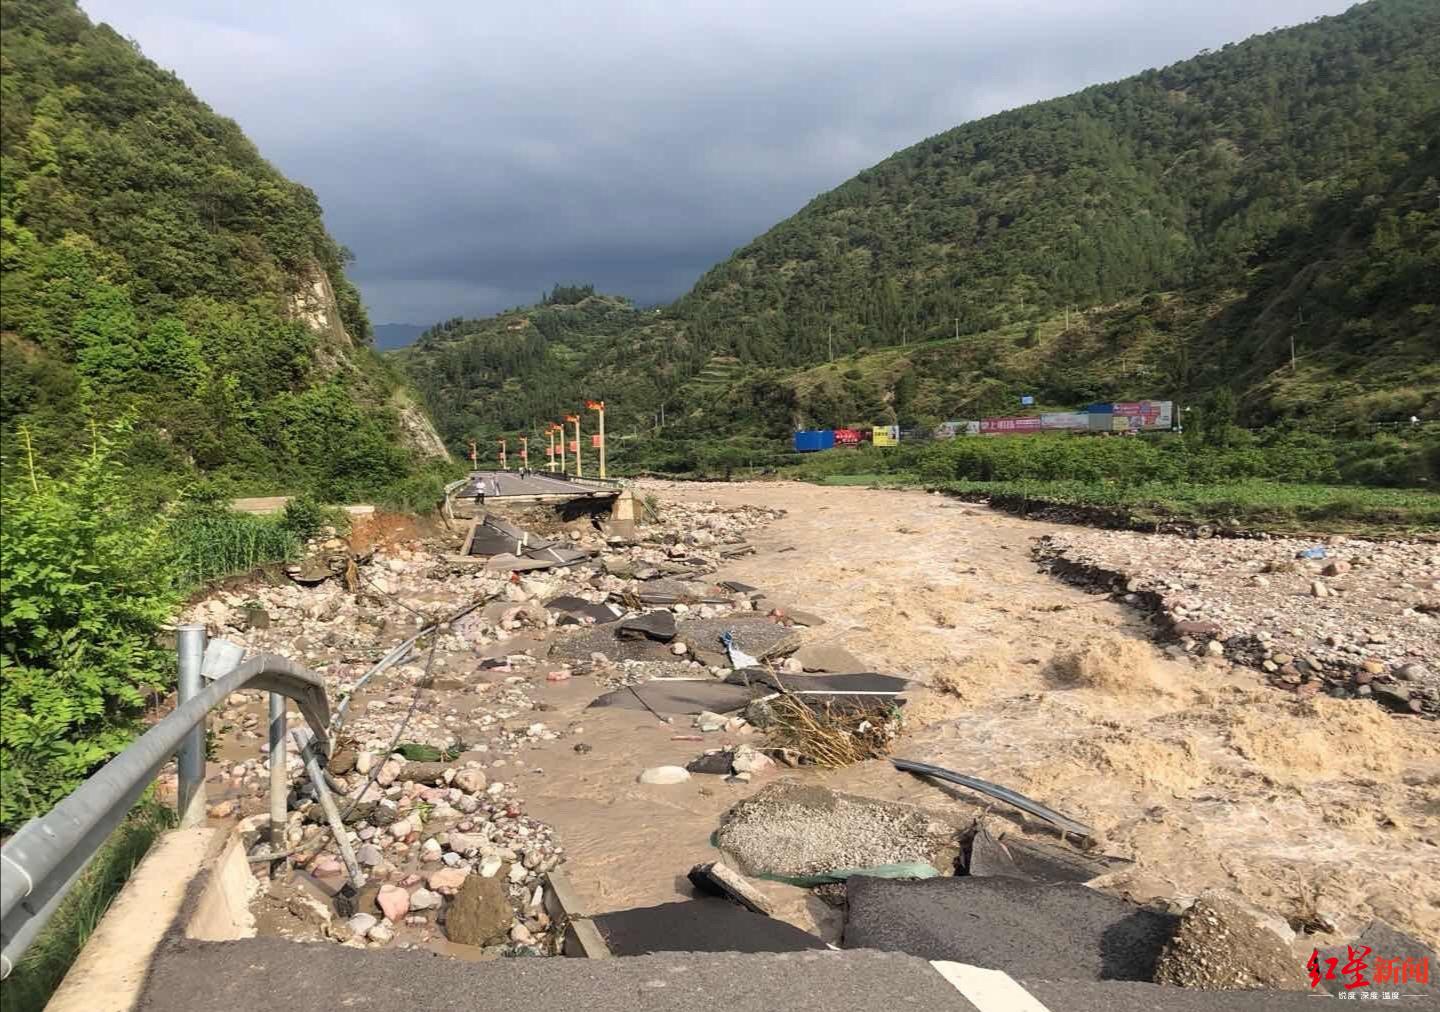 四川冕宁爆发特大山洪灾害,灵山景区营救被困游客53人